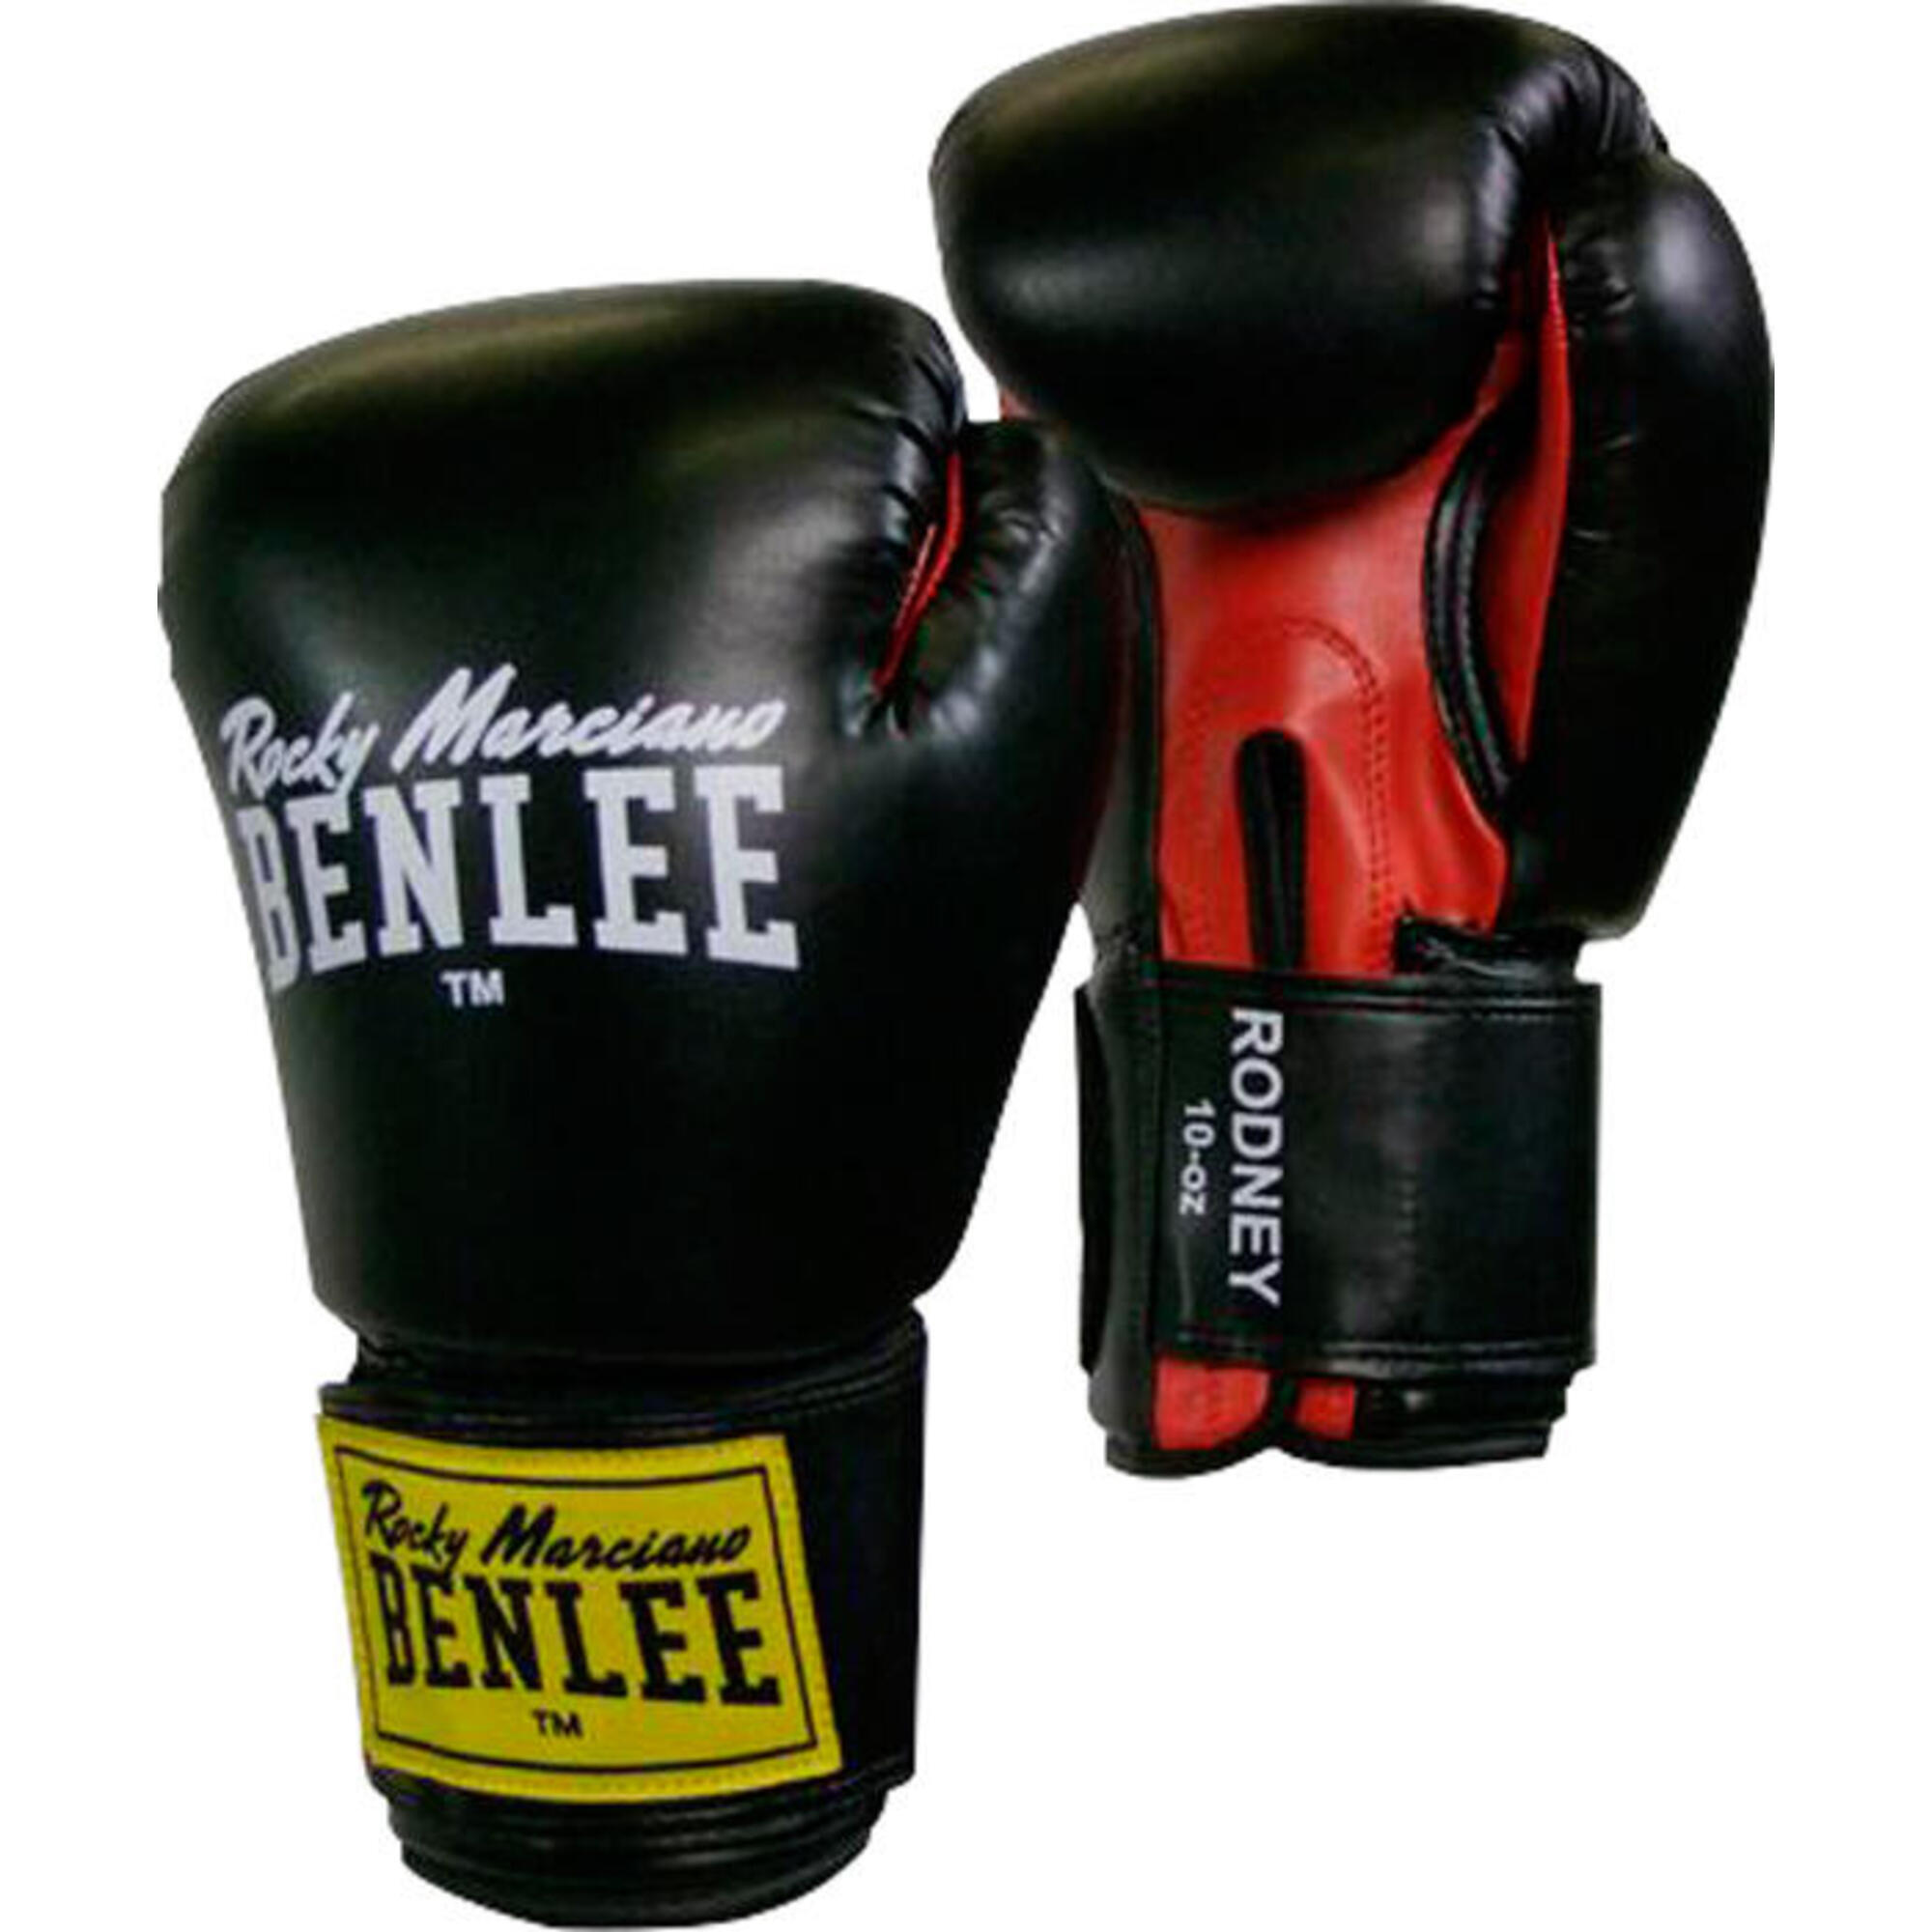 Боксерские перчатки Benlee Rodney 16 oz чёрно-красные, черный перчатки боксерские boybo stain флекс зелёные 6 oz